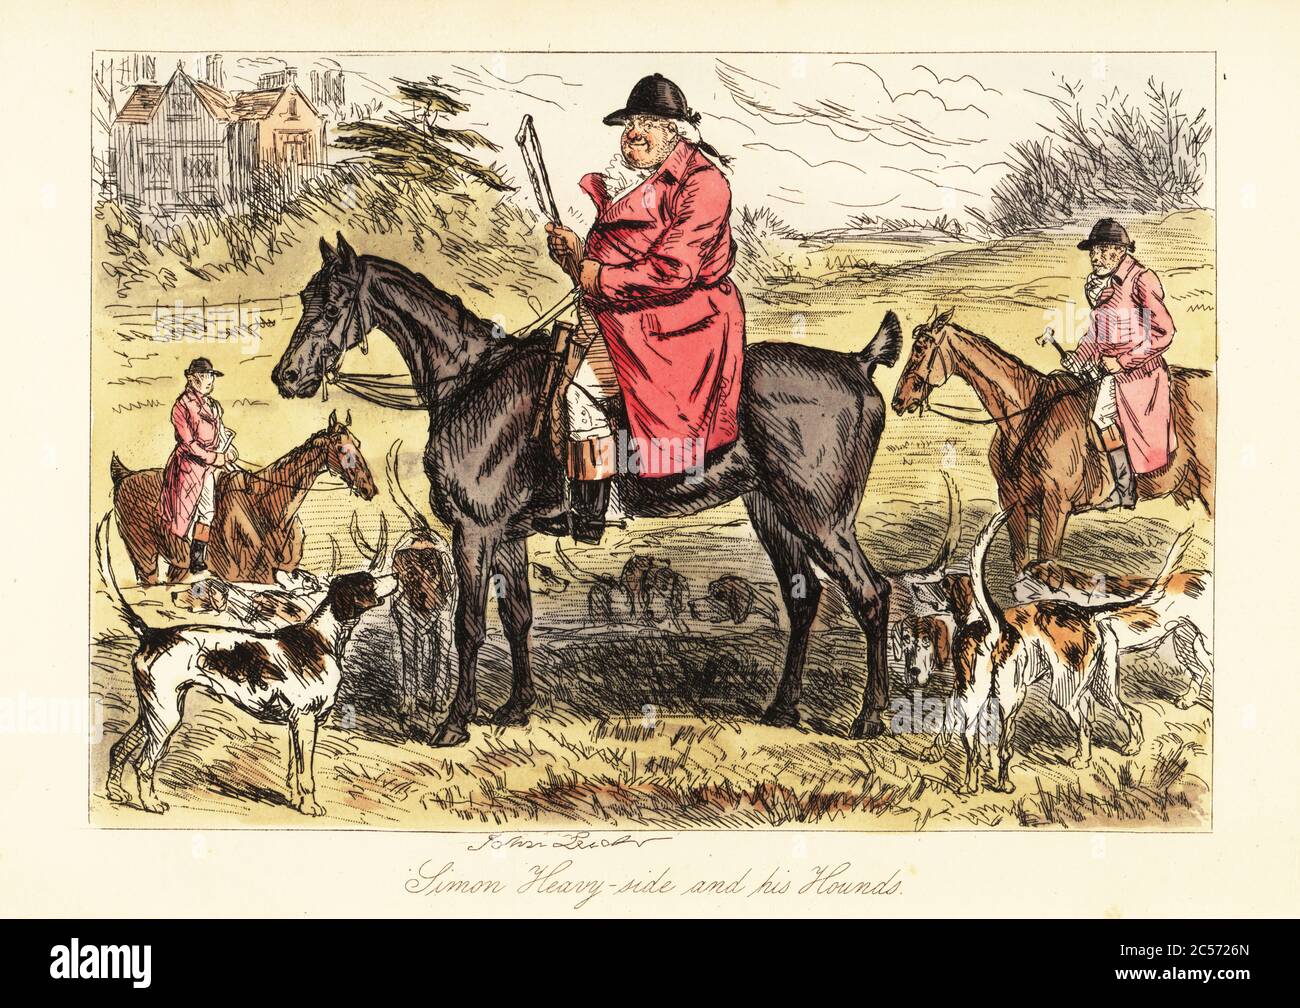 Englischer Jäger in Jagdpinken auf einem Pferd mit einem Rudel Fuchshunde sitzend, 19. Jahrhundert. Simon Heavy-Side und seine Hunde. Handkolorierter Stahlstich nach einer Illustration von John Leech aus Robert Smith Surtees’ Mr. Facey Romford’s Hounds, Bradbury, Evans and Co., London, 1865. Leech (1817-1864) war ein englischer Karikaturist und Illustrator, der vor allem für seine Arbeit für das Punch Magazin bekannt war. Stockfoto